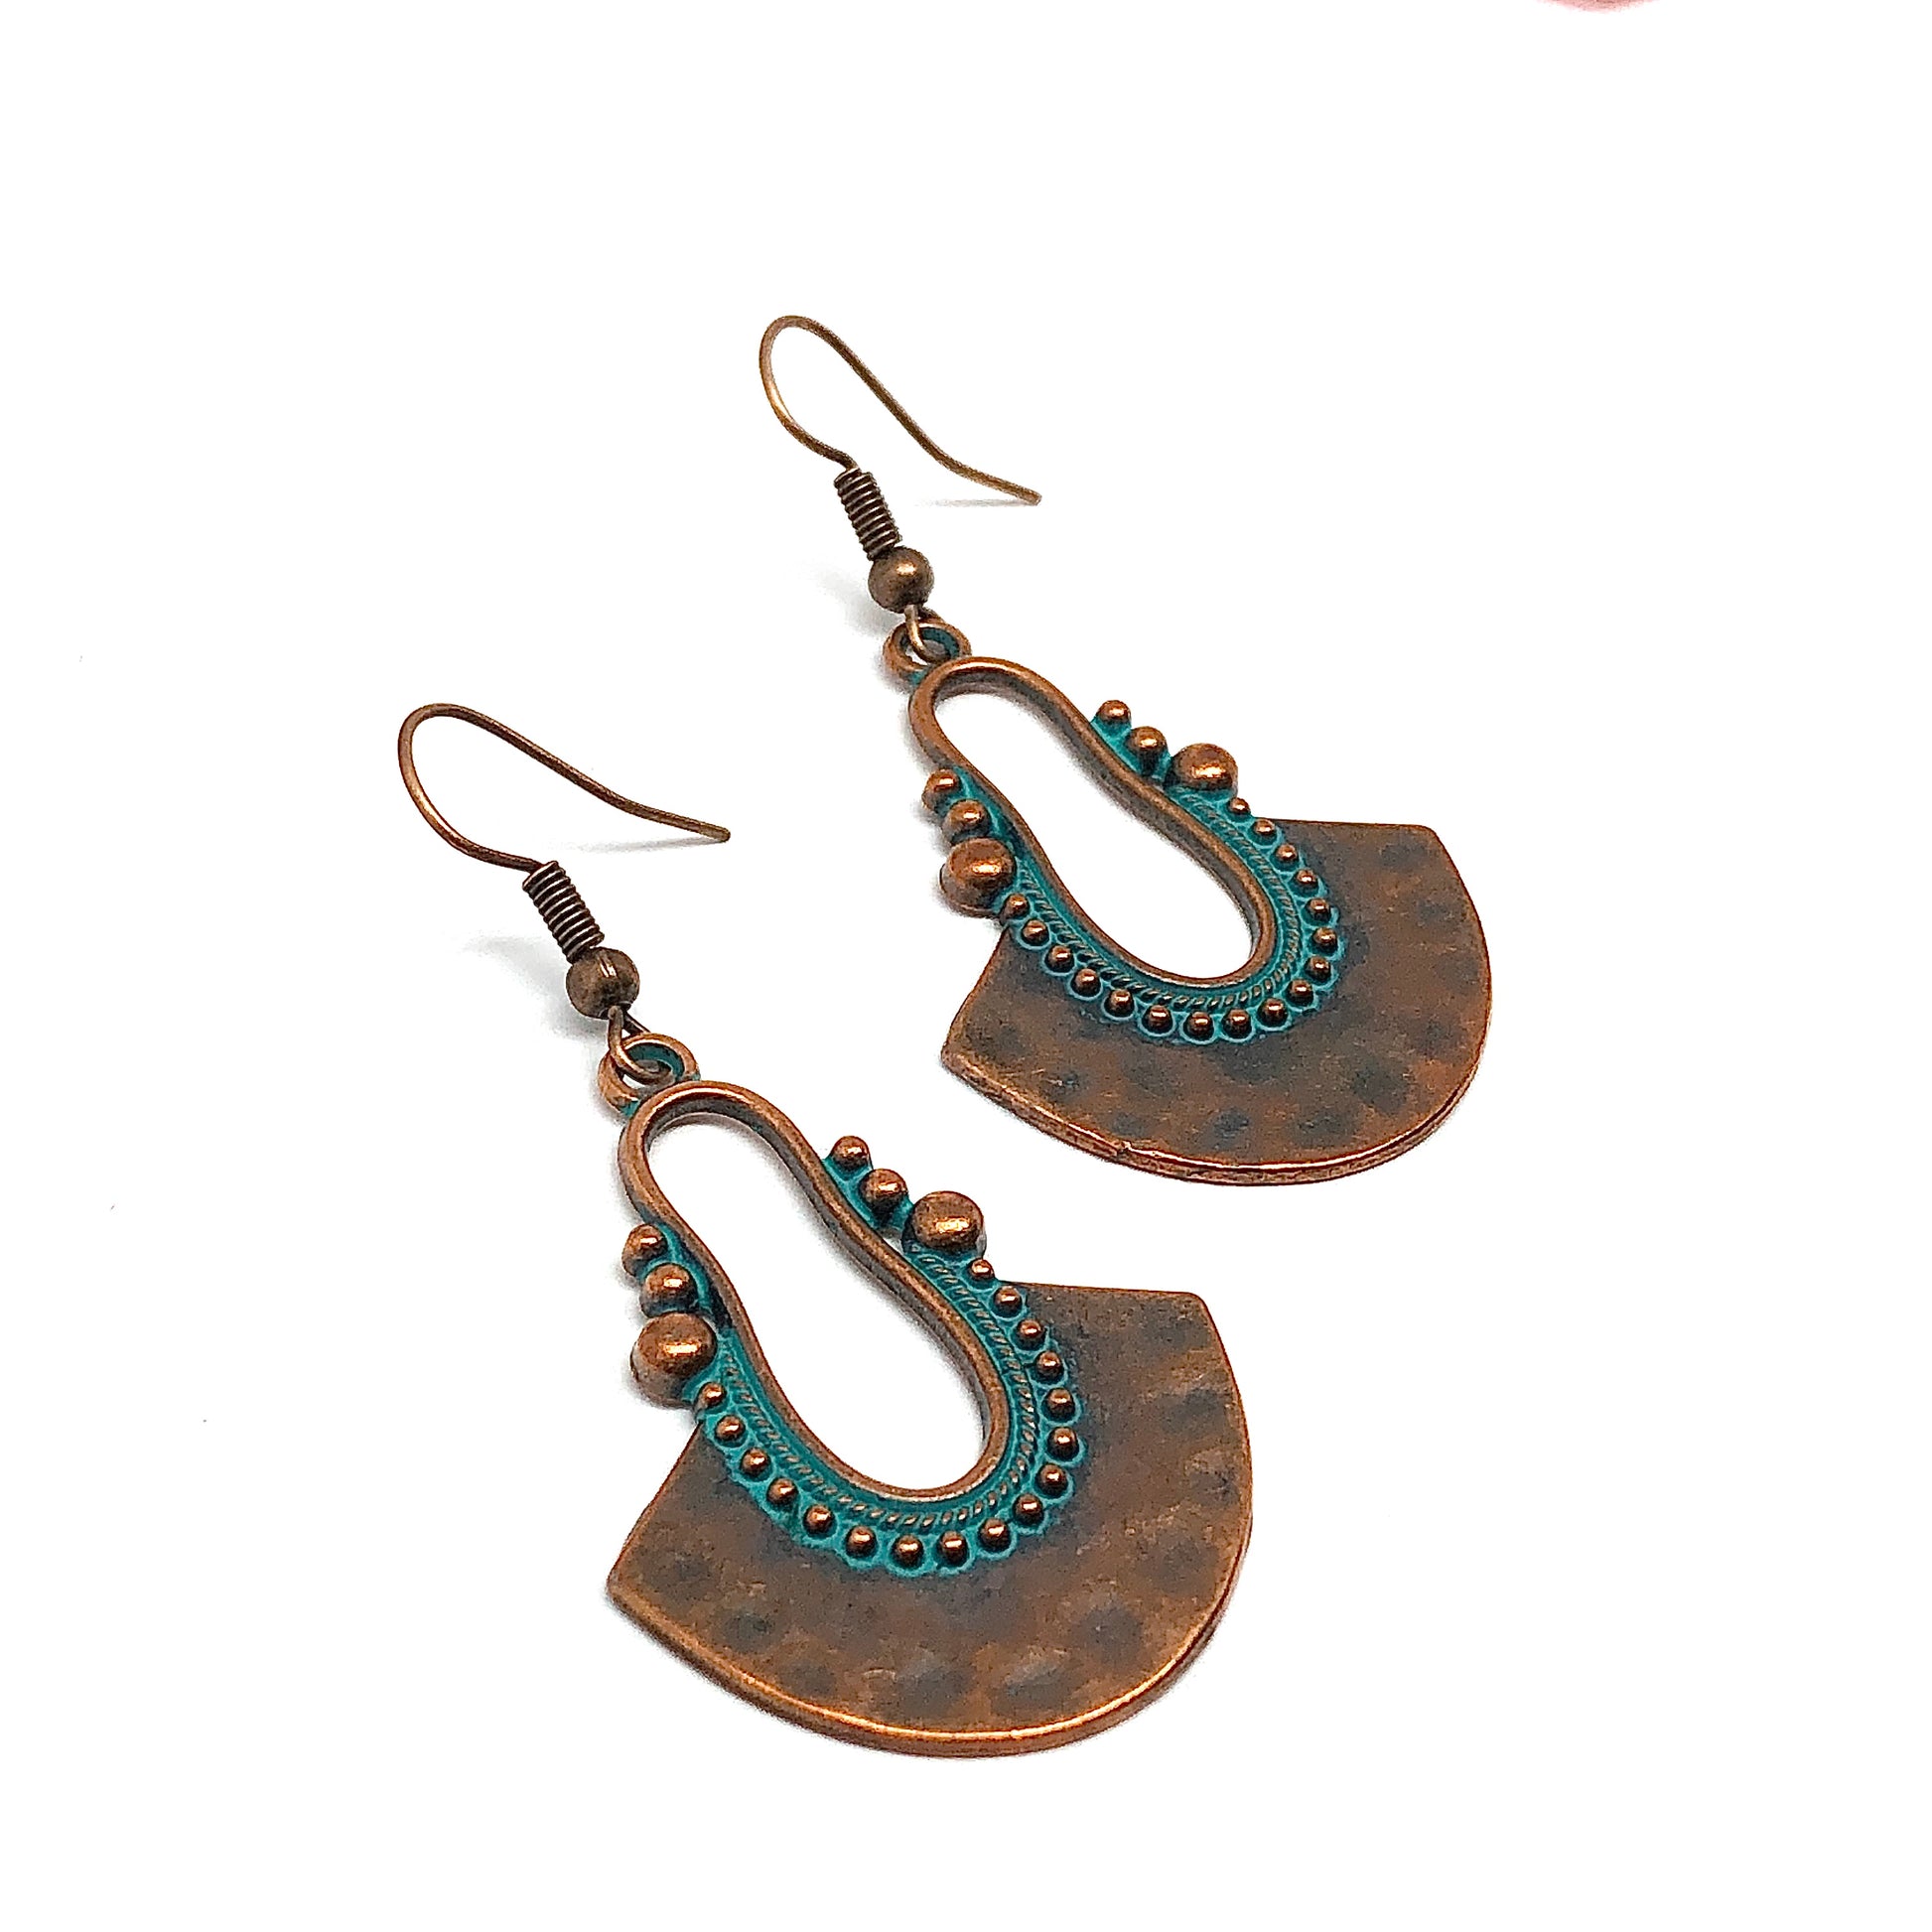 Boho Silver Earrings Dangle Earrings Boho Jewelry Bohemian Earrings Statement Earrings Ethnic Gypsy Hippie Earrings